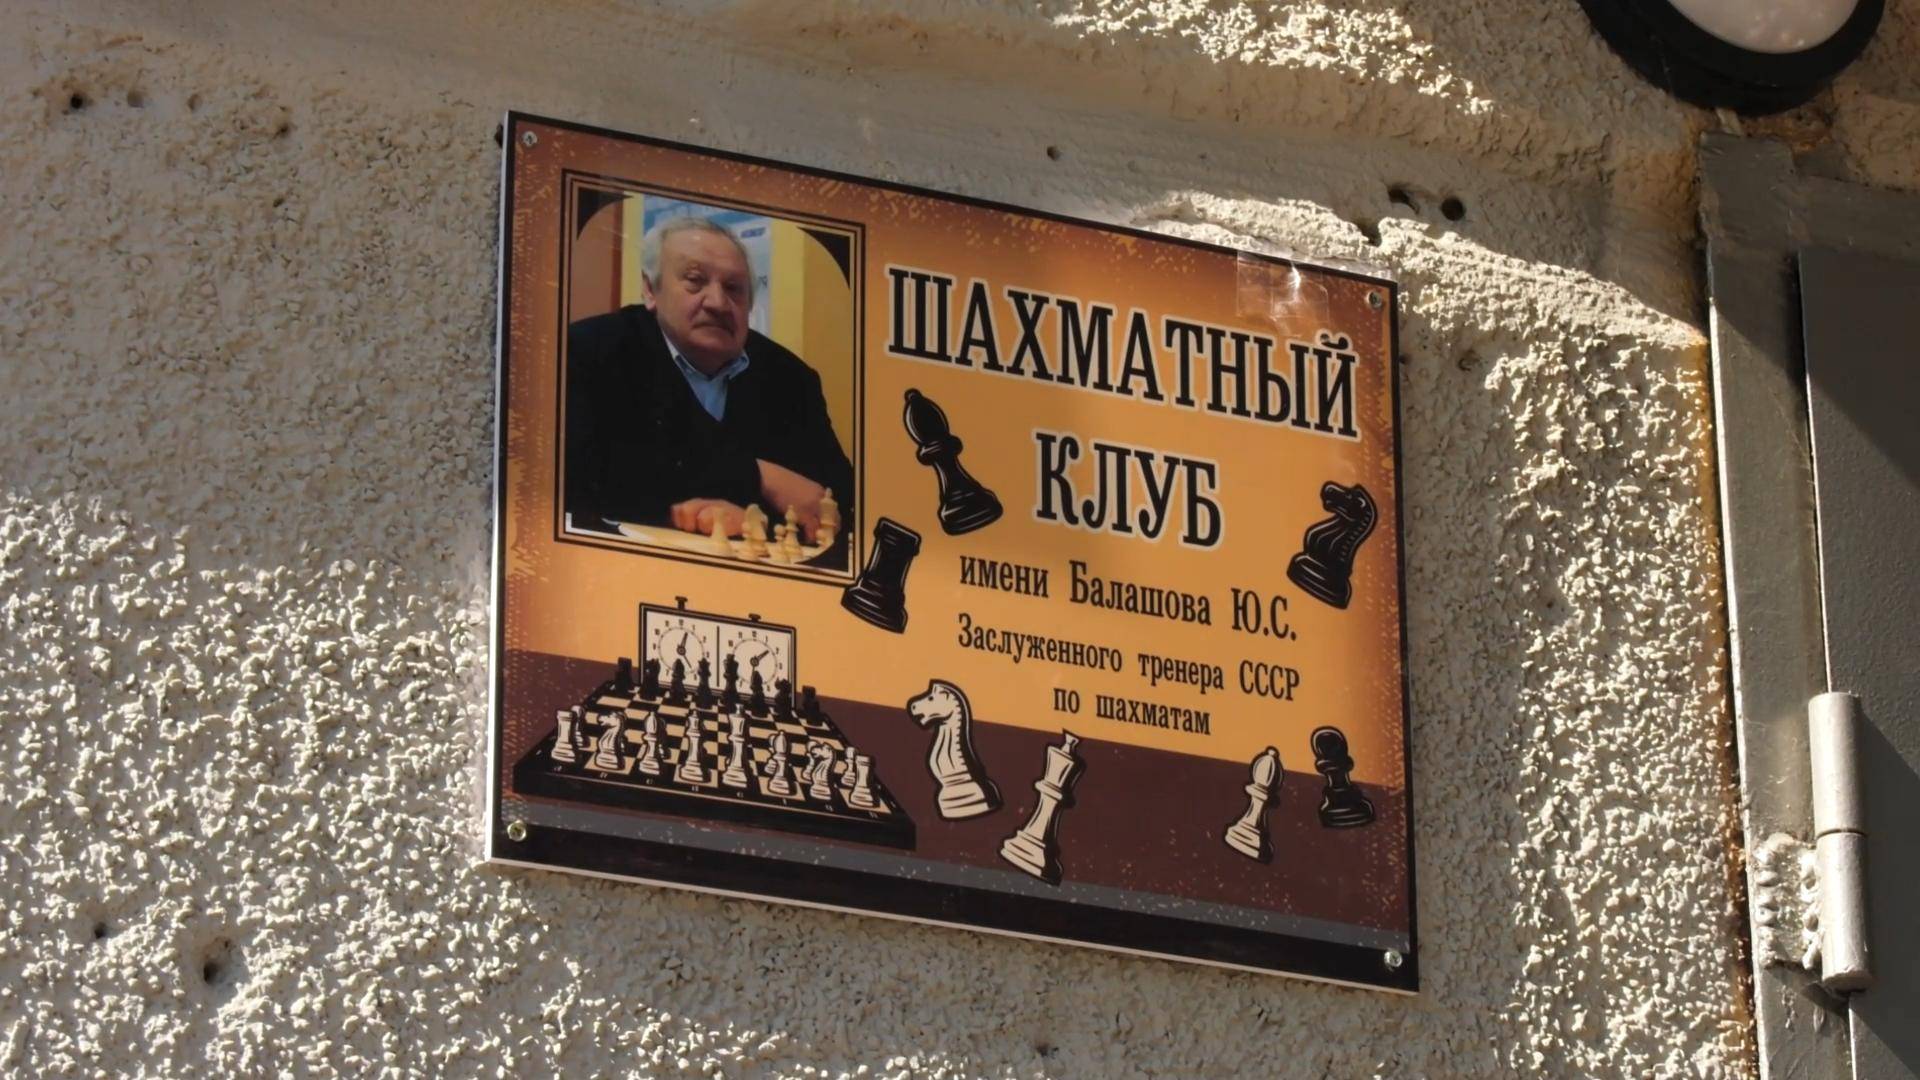 Шадринскому шахматному клубу присвоено имя Ю.С. Балашова